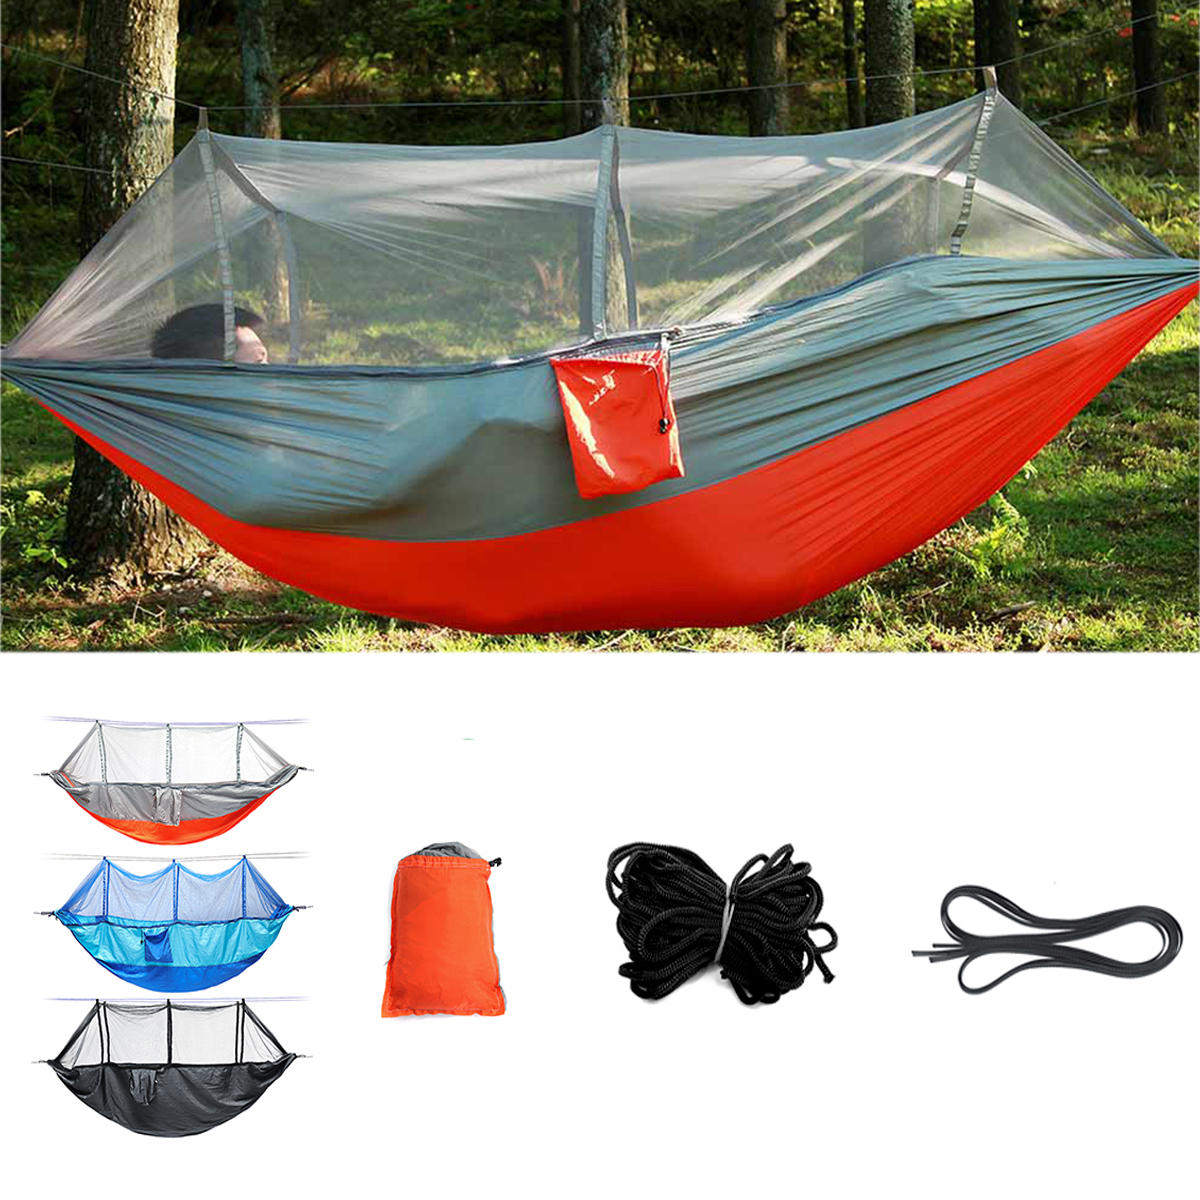 شبكة مزدوجة للراحة في الهواء الطلق مع خيمة تخييم وشبكة للحماية من البعوض